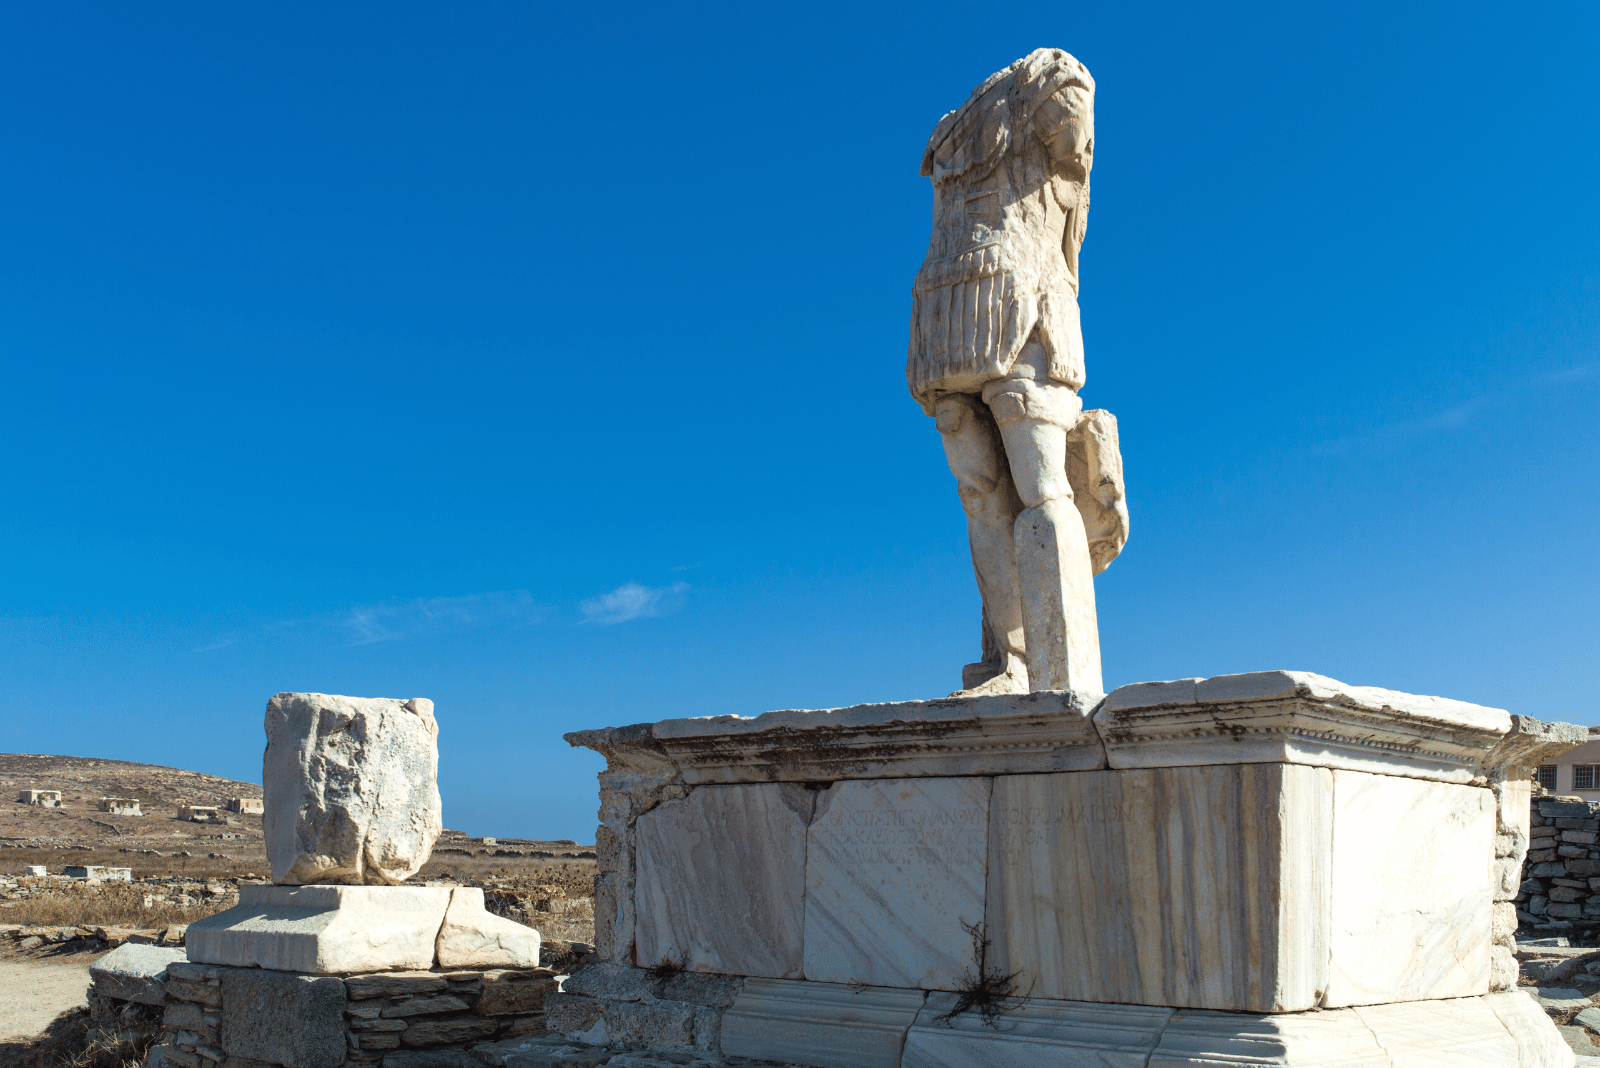 Roman ruins on the island of Delos